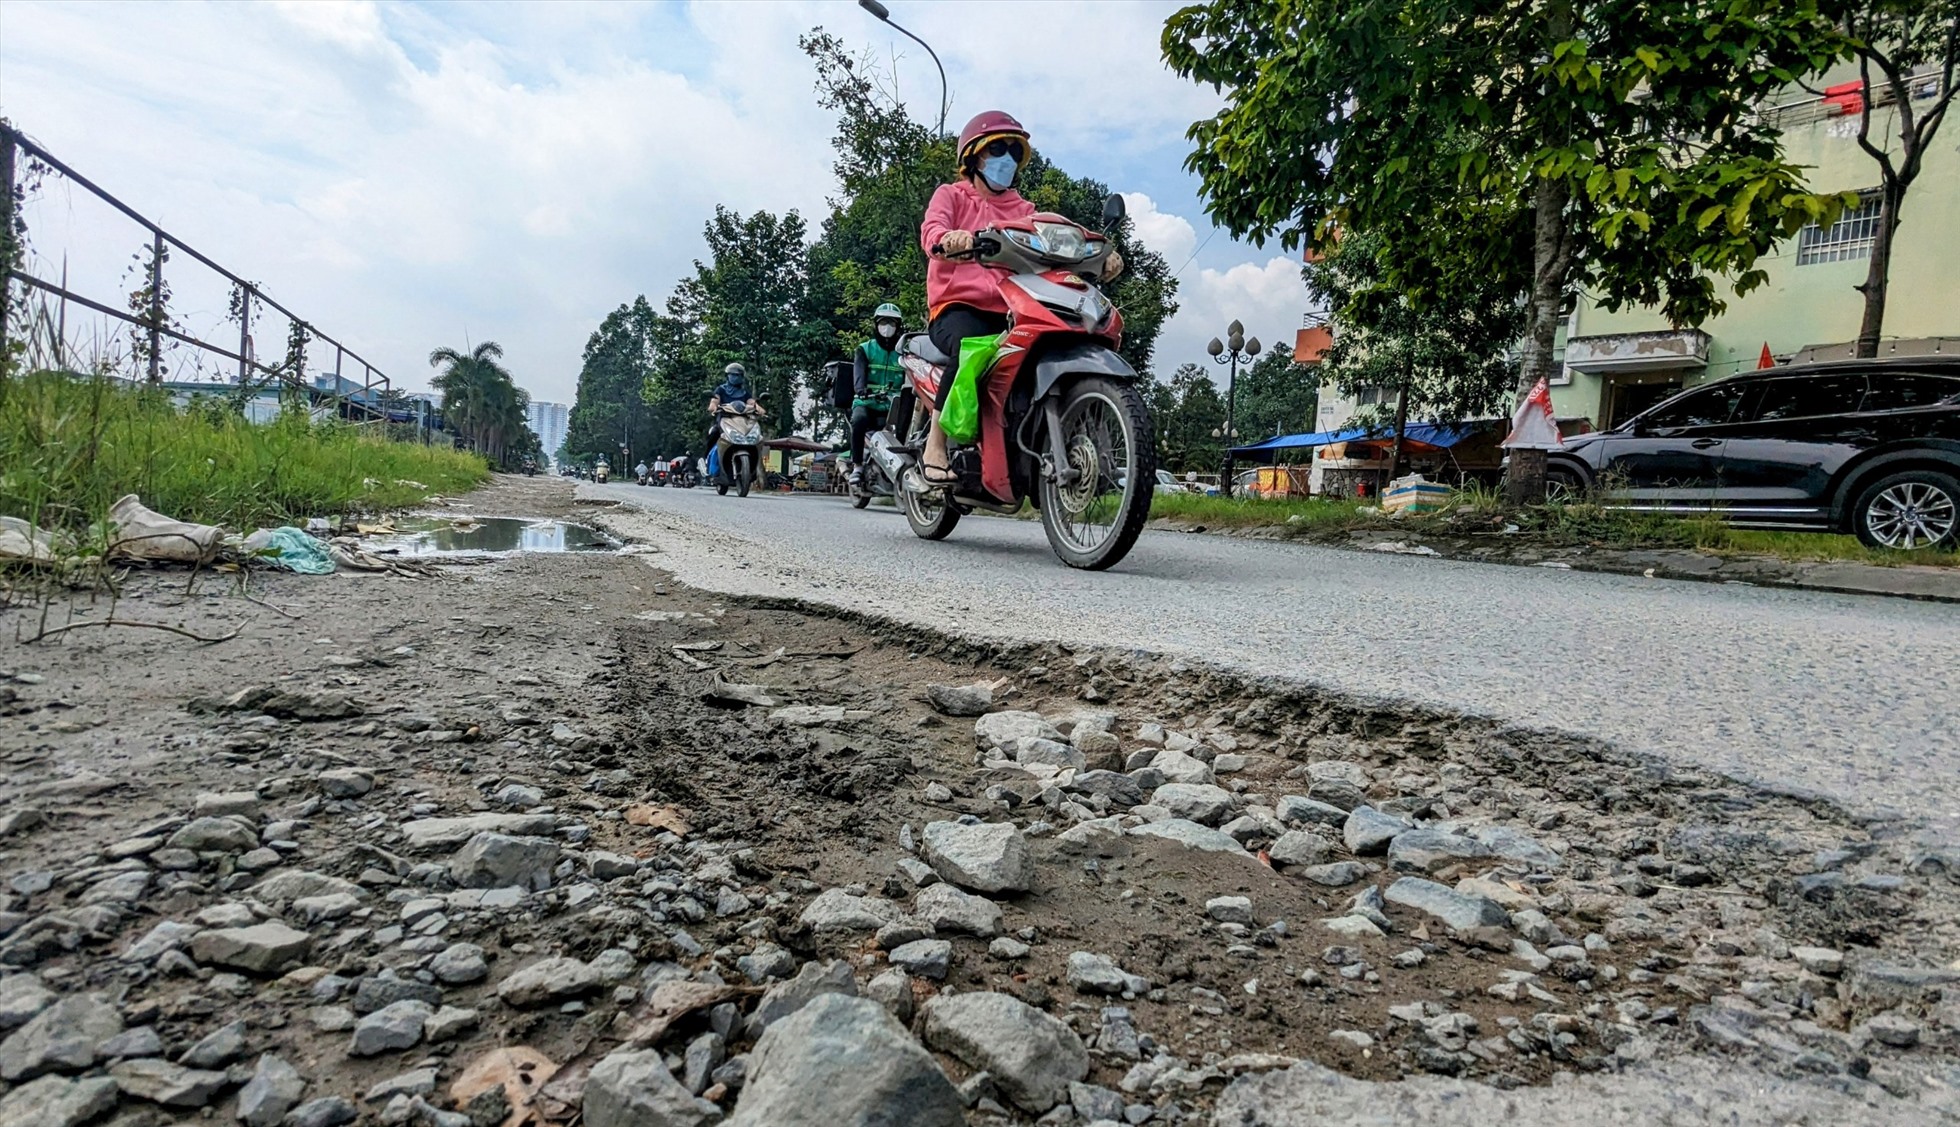 Lãnh đạo UBND phường An Phú cũng nhận định rằng trục đường Nguyễn Hoàng đang xuống cấp nghiêm trọng, mật độ giao thông rất cao, rất cần duy tu, sửa chữa khẩn cấp.